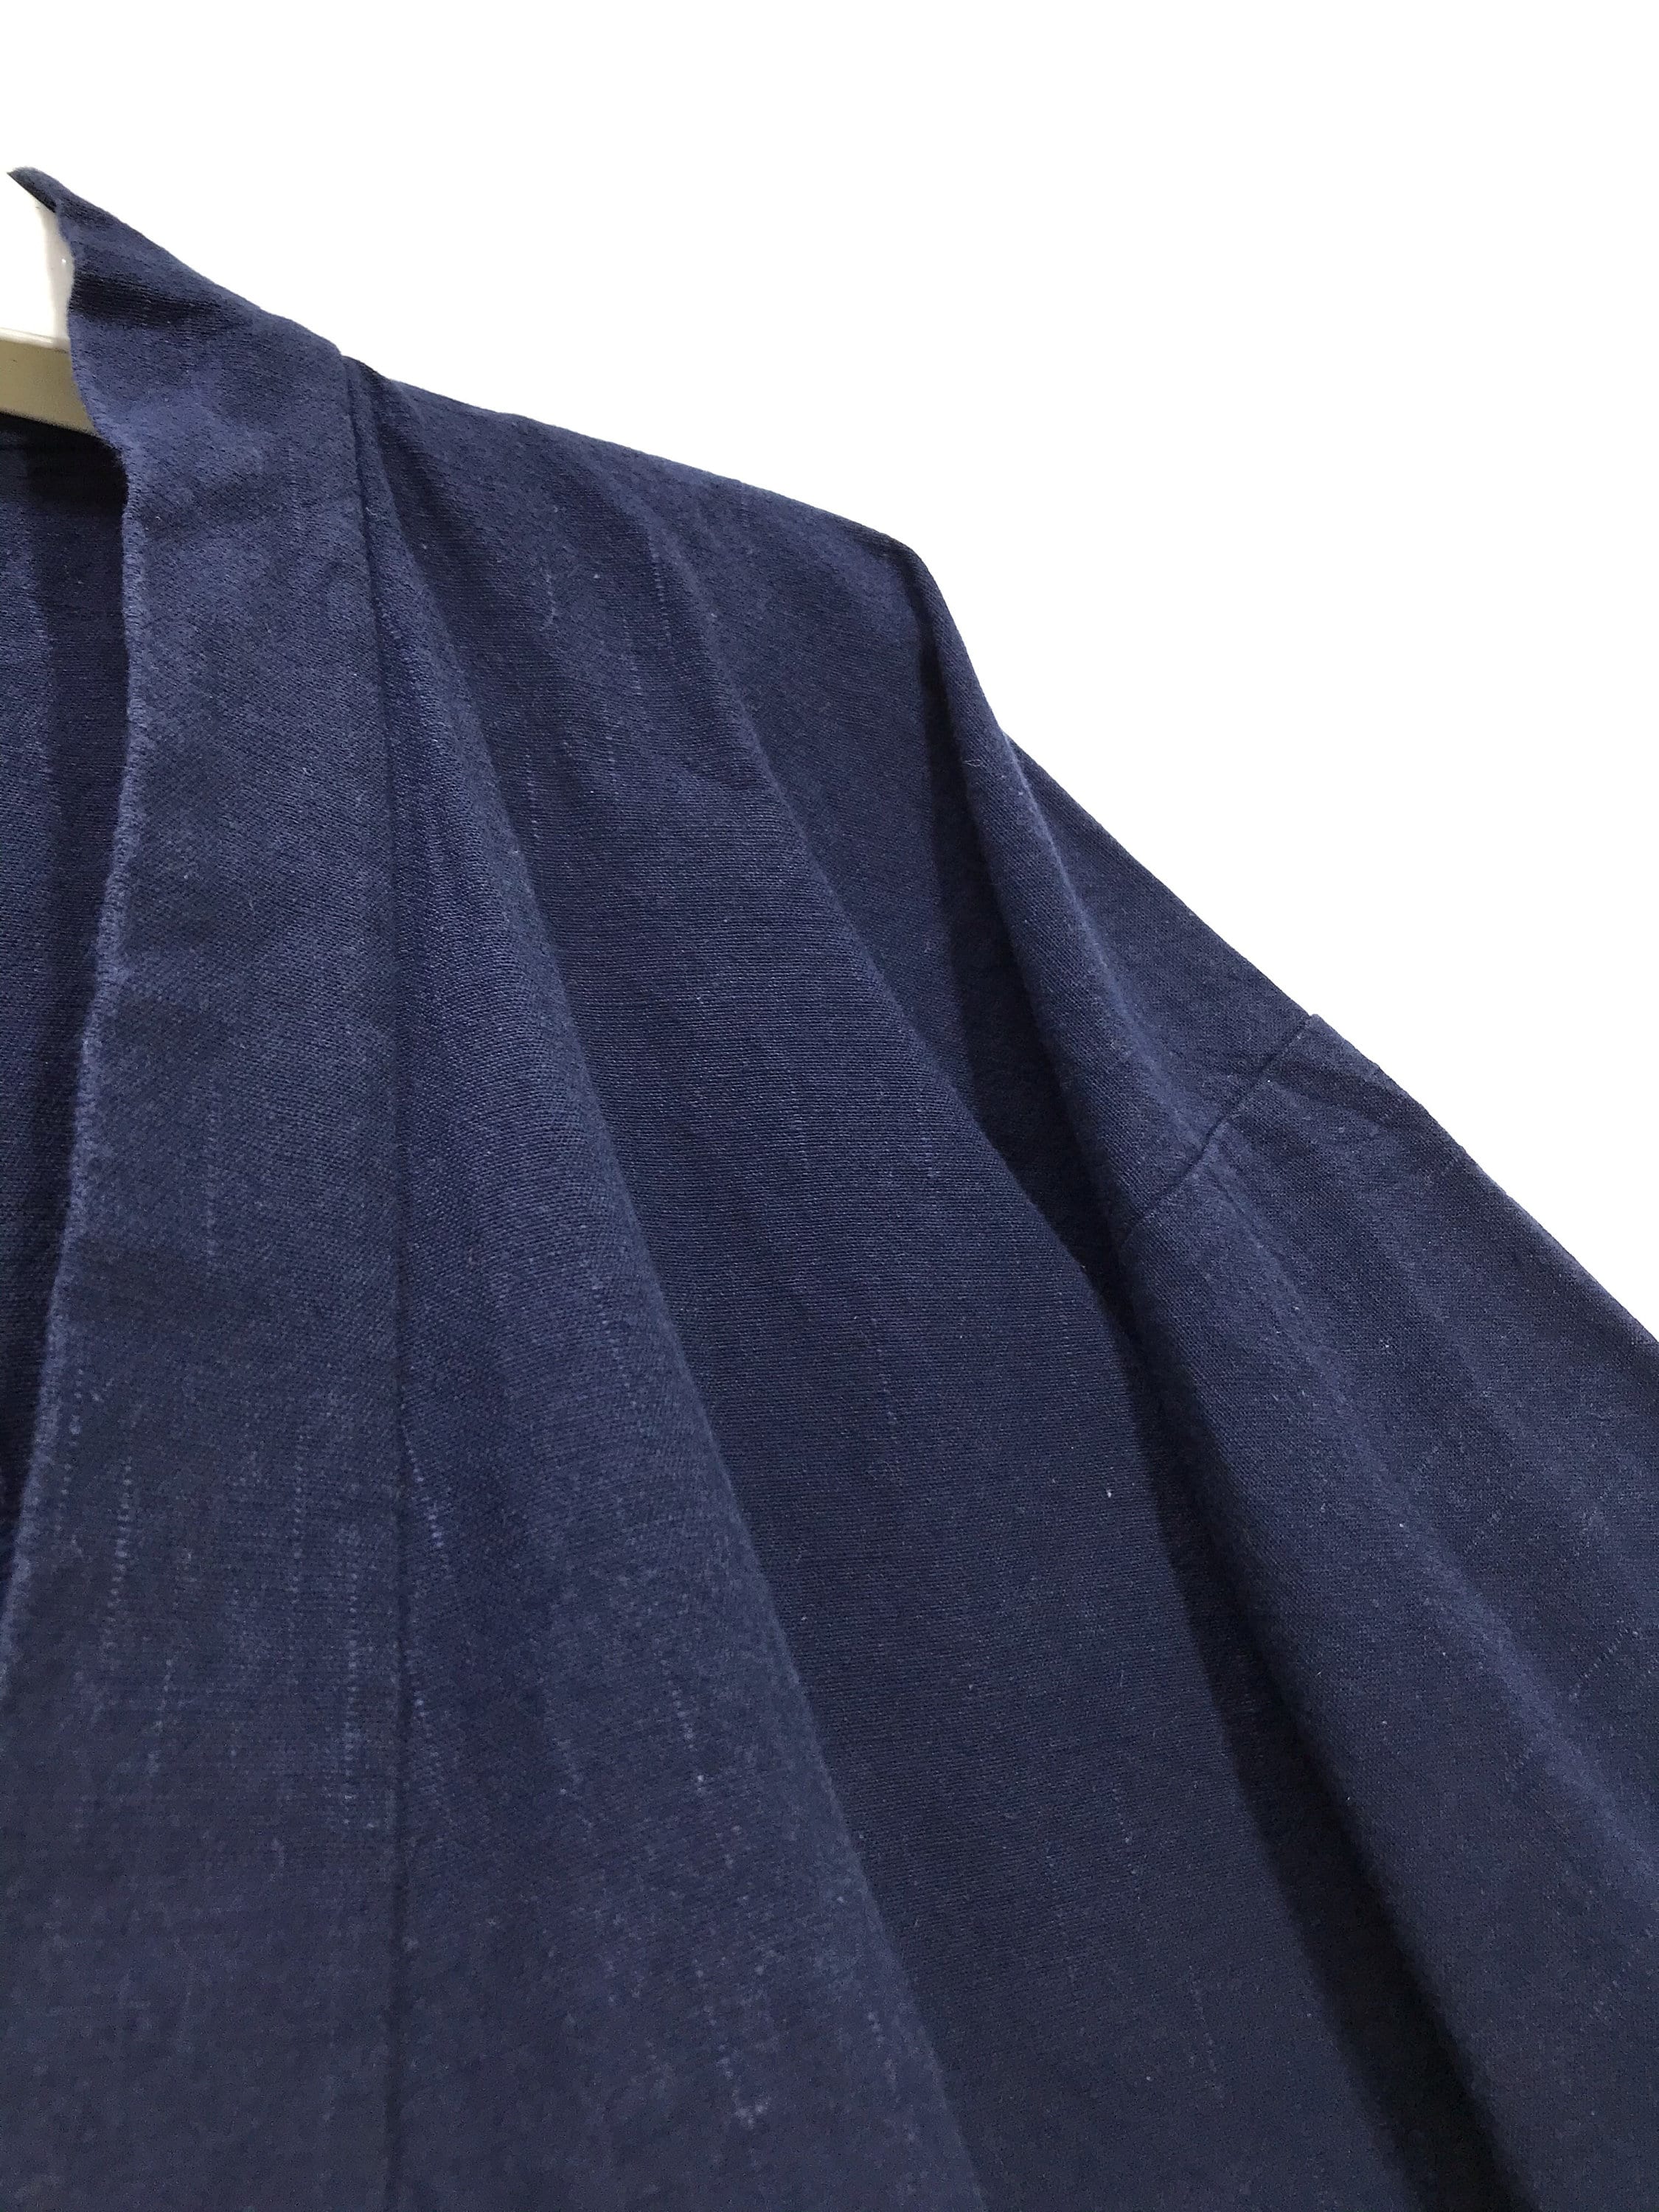 Made in Japan Vintage Haori Noragi Cotton Indigo Blue Kimono | Etsy